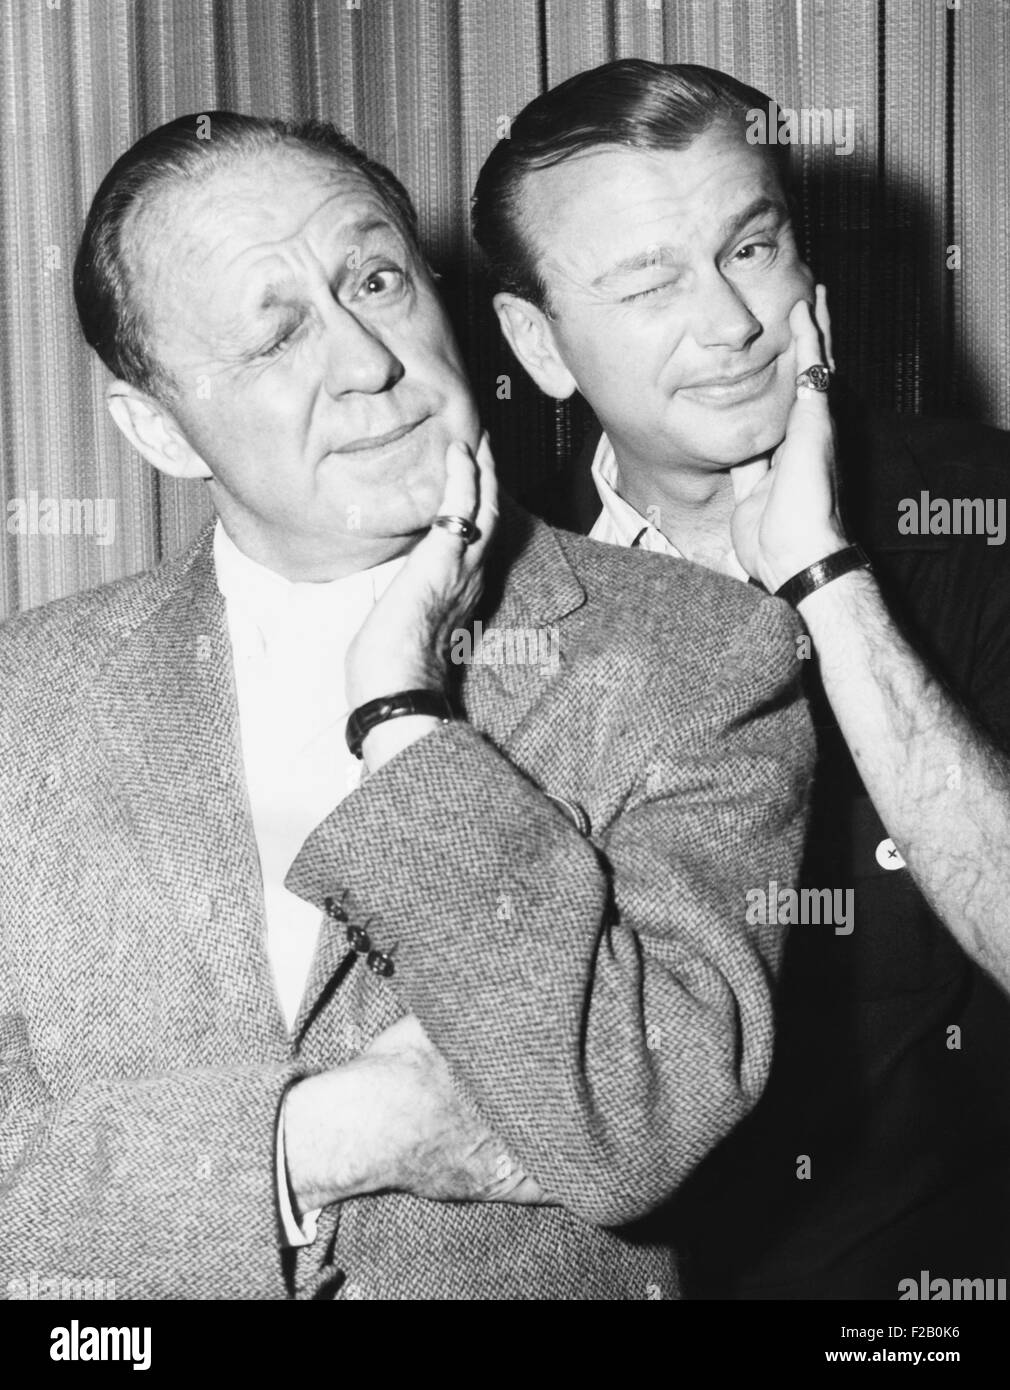 Jack Benny et Jack Parr posent avec des expressions du visage, le 2 décembre 1959. Paar carrière prend un bond quand Benny recommandé Paar servent de son émission de télévision de l'été 1947 de remplacement. CSU (2015  9 1055) Banque D'Images